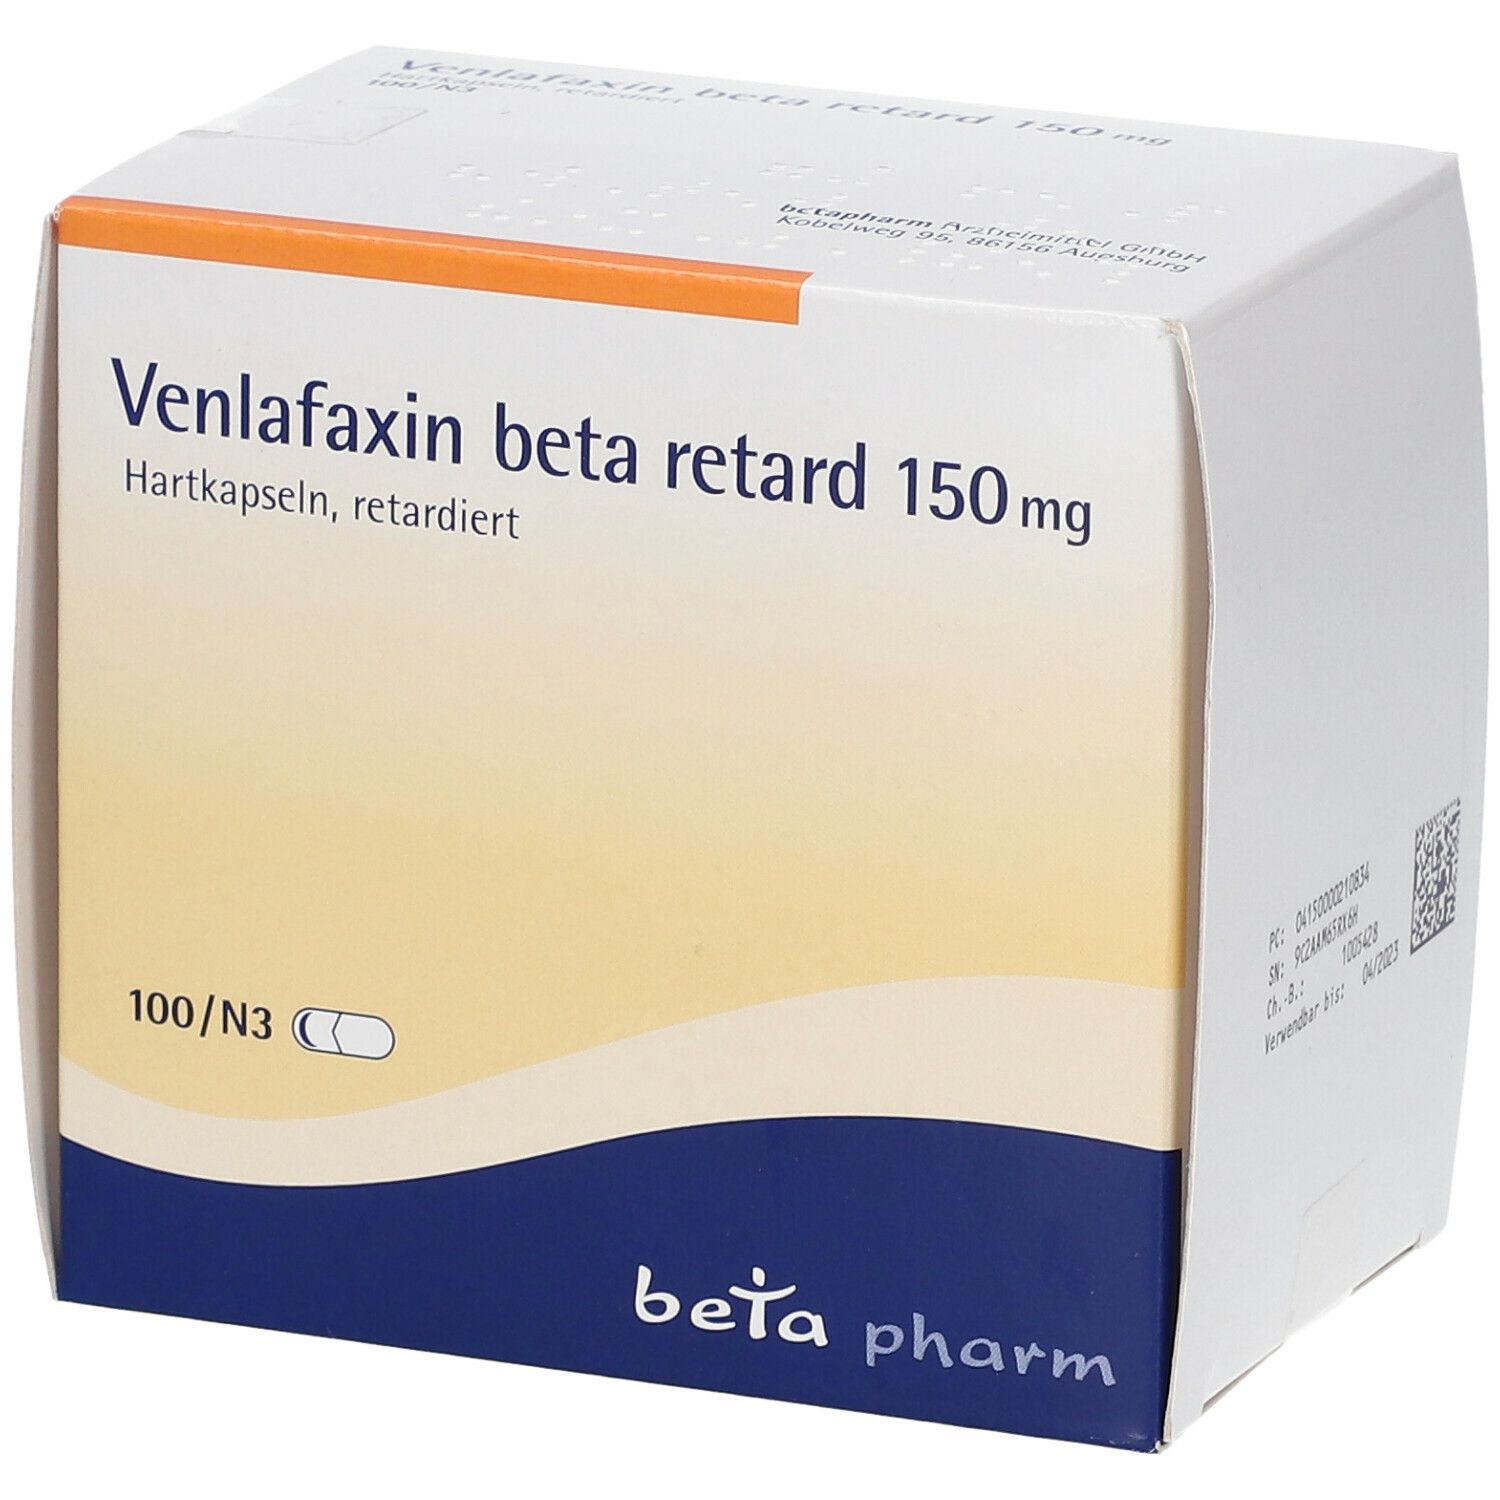 Venlafaxin beta retard 150 mg